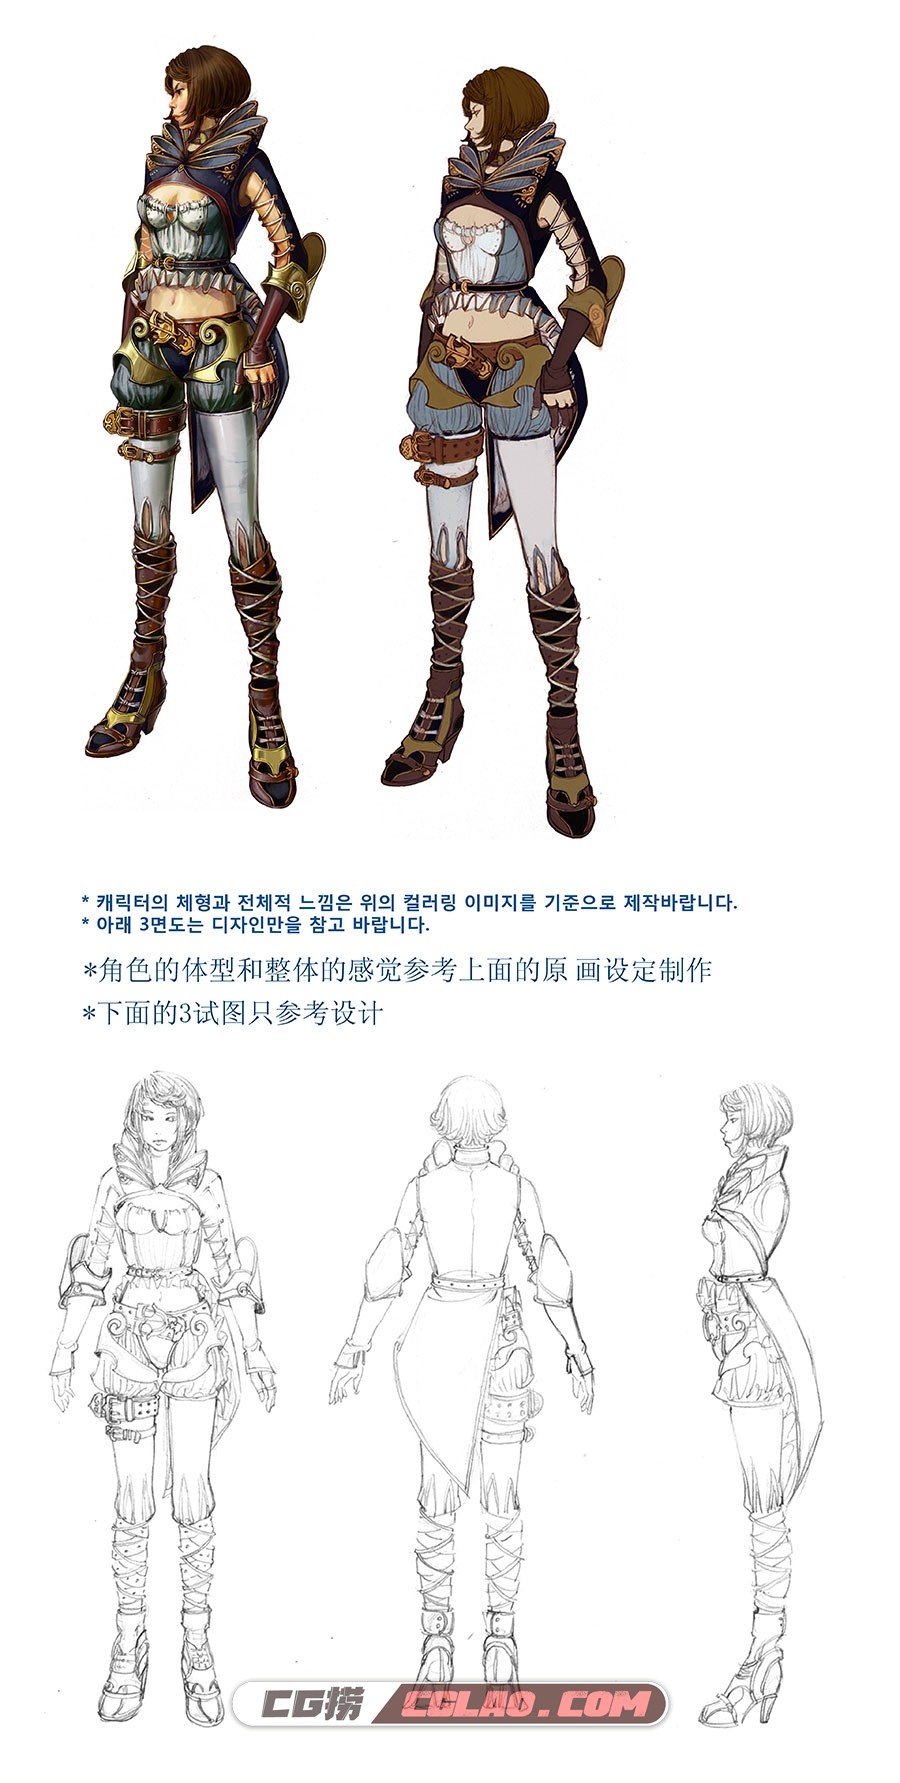 韩式游戏角色概念设计原画线稿 39P,Archer---Cloth-001--concept.jpg